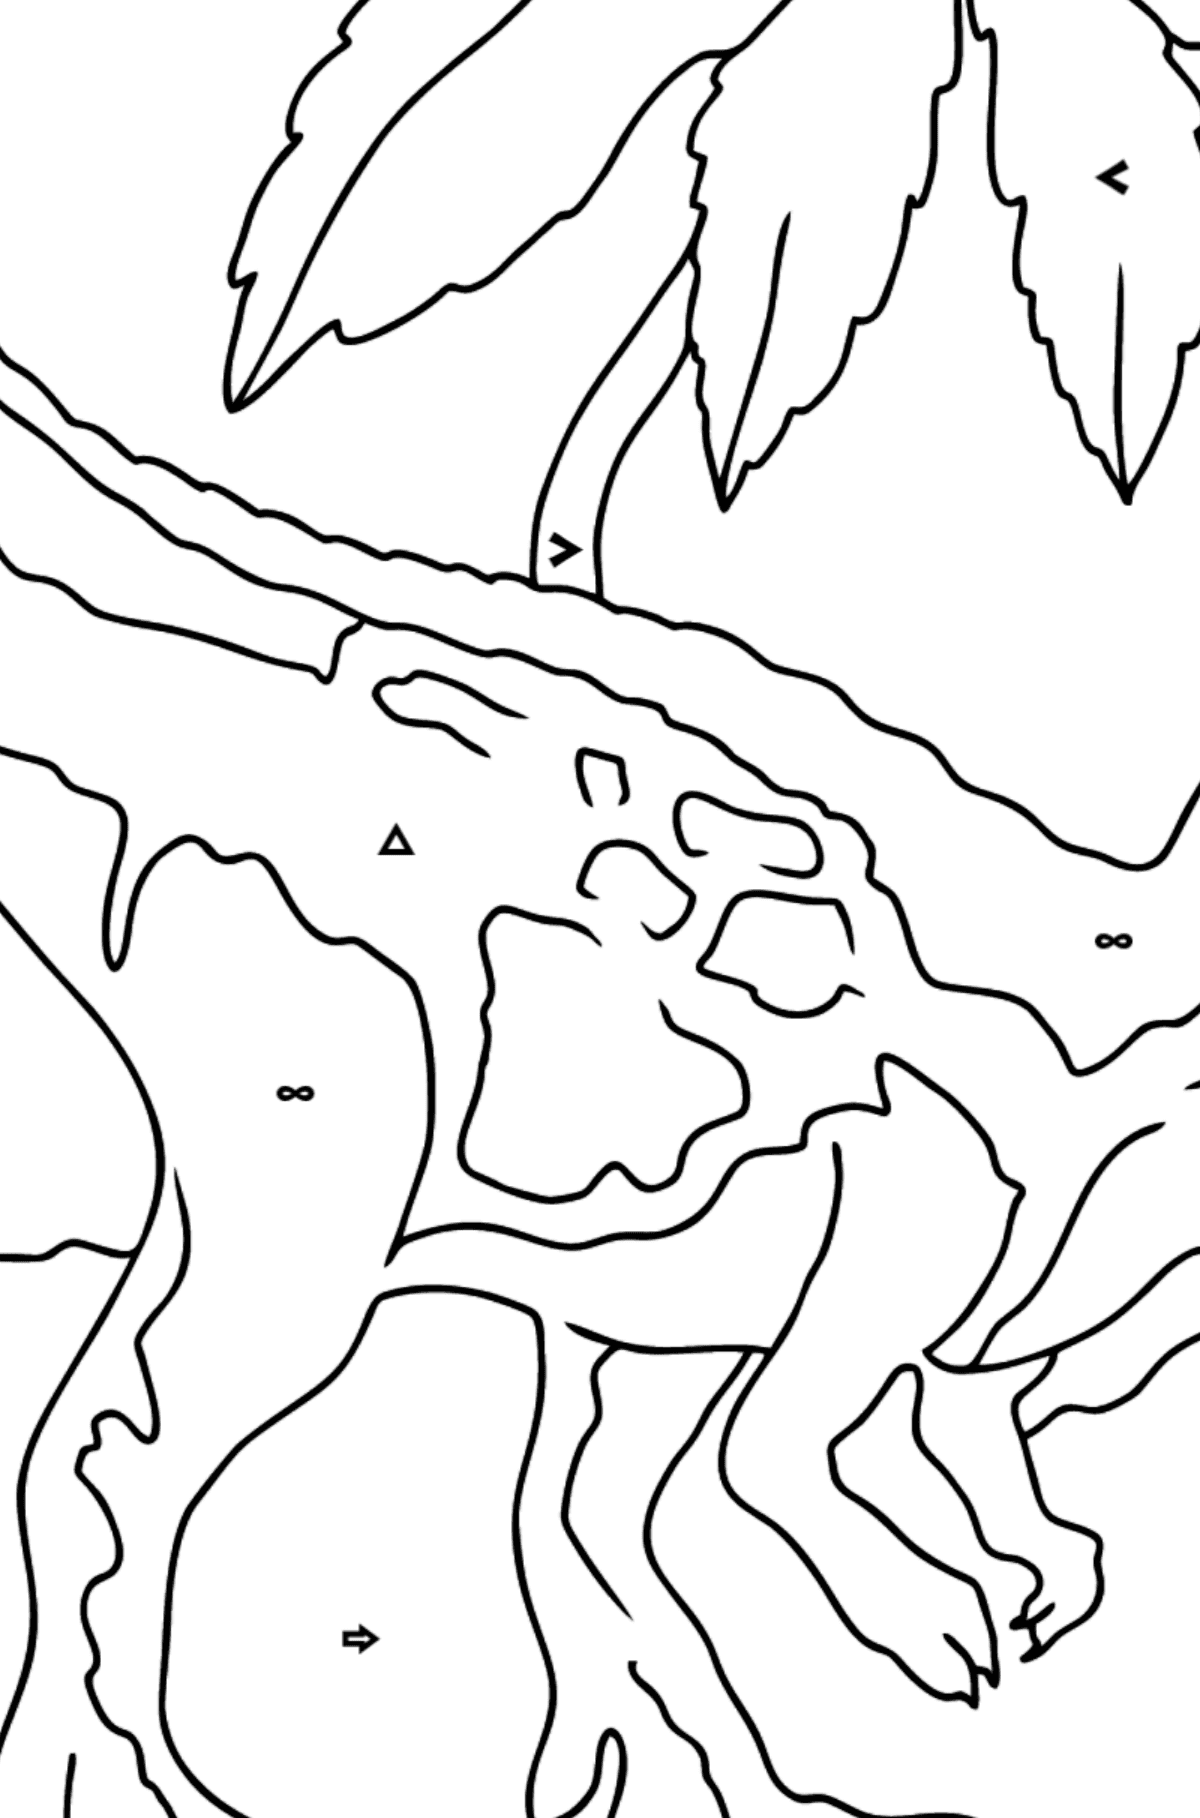 Disegno di interessante Tirannosauro da colorare - Colorare per simboli e forme geometriche per bambini